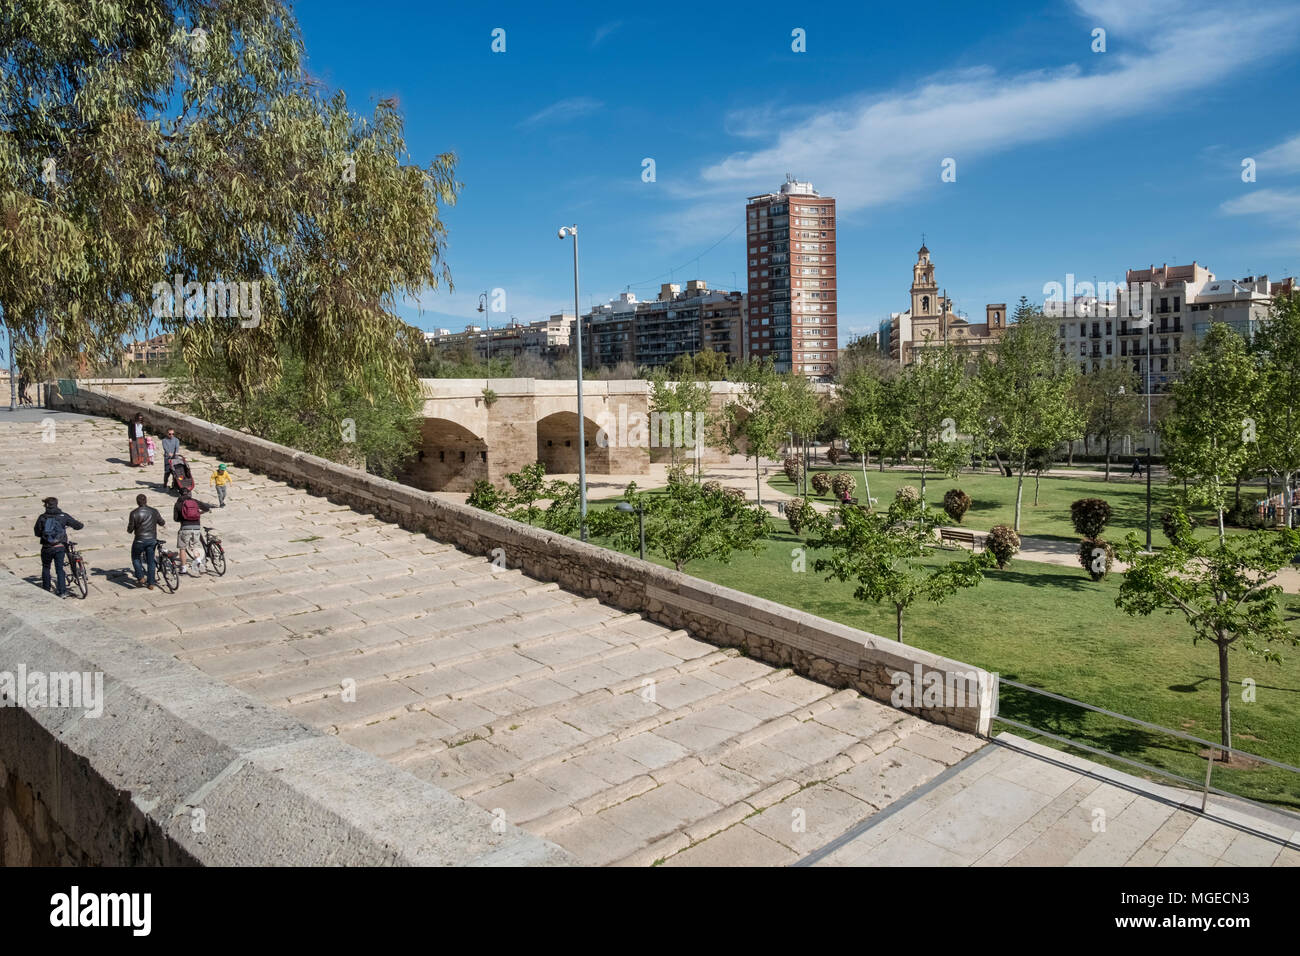 Jardines del Turia (Jardines del Turia), un antiguo cauce 9km corriendo por el centro de la ciudad convertido en un jardín público, Valencia, España Foto de stock